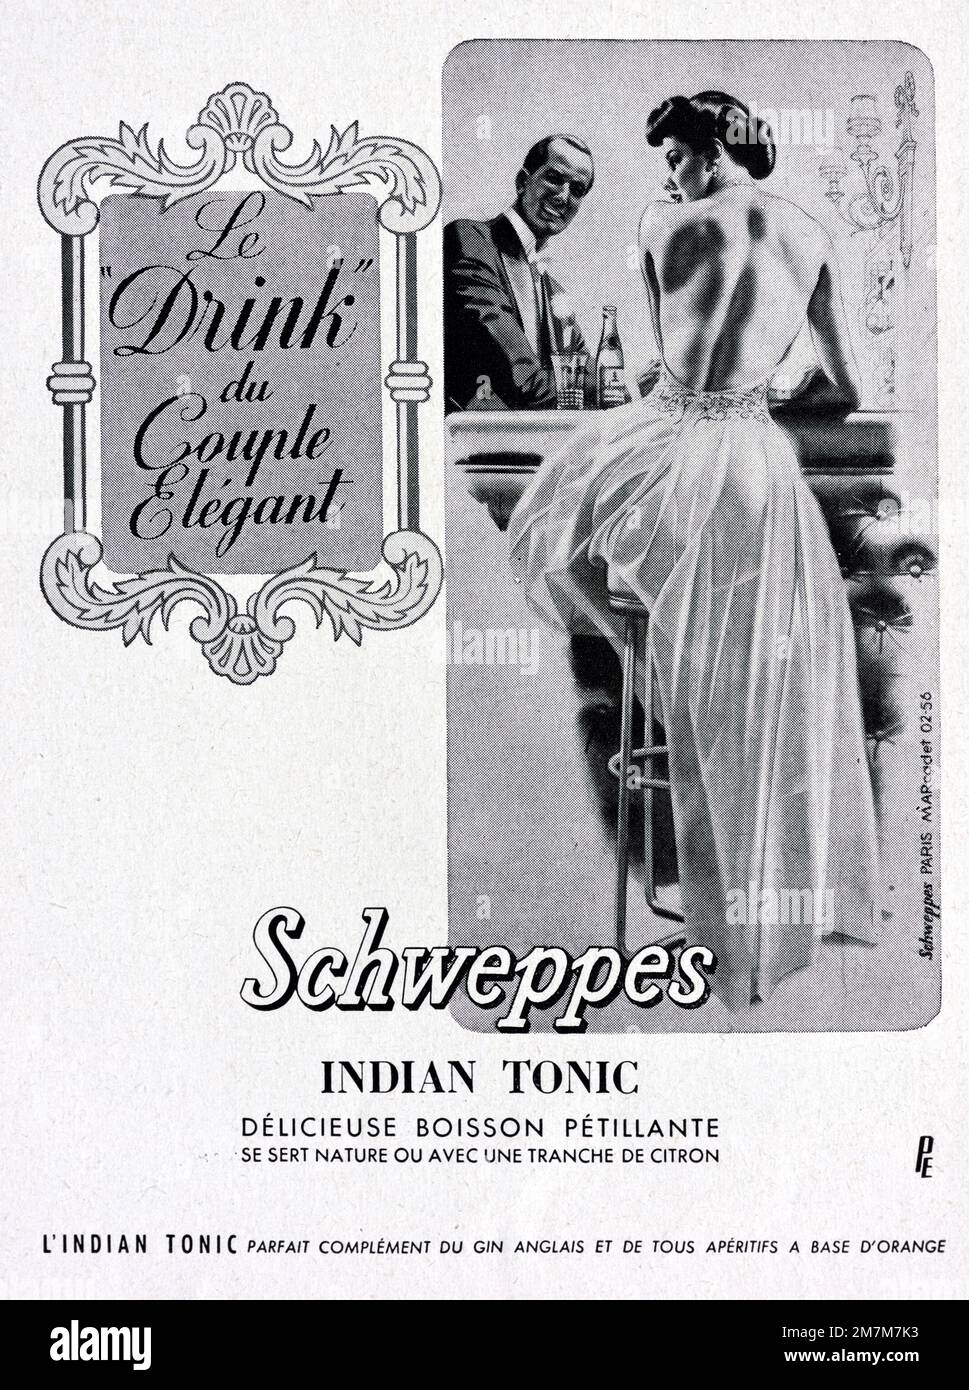 Vintage o antiguo anuncio, anuncio, publicidad o ilustración para Schweppes indio tónico anuncio 1956 con elegante pareja joven en vestido formal o moda 1950s Foto de stock